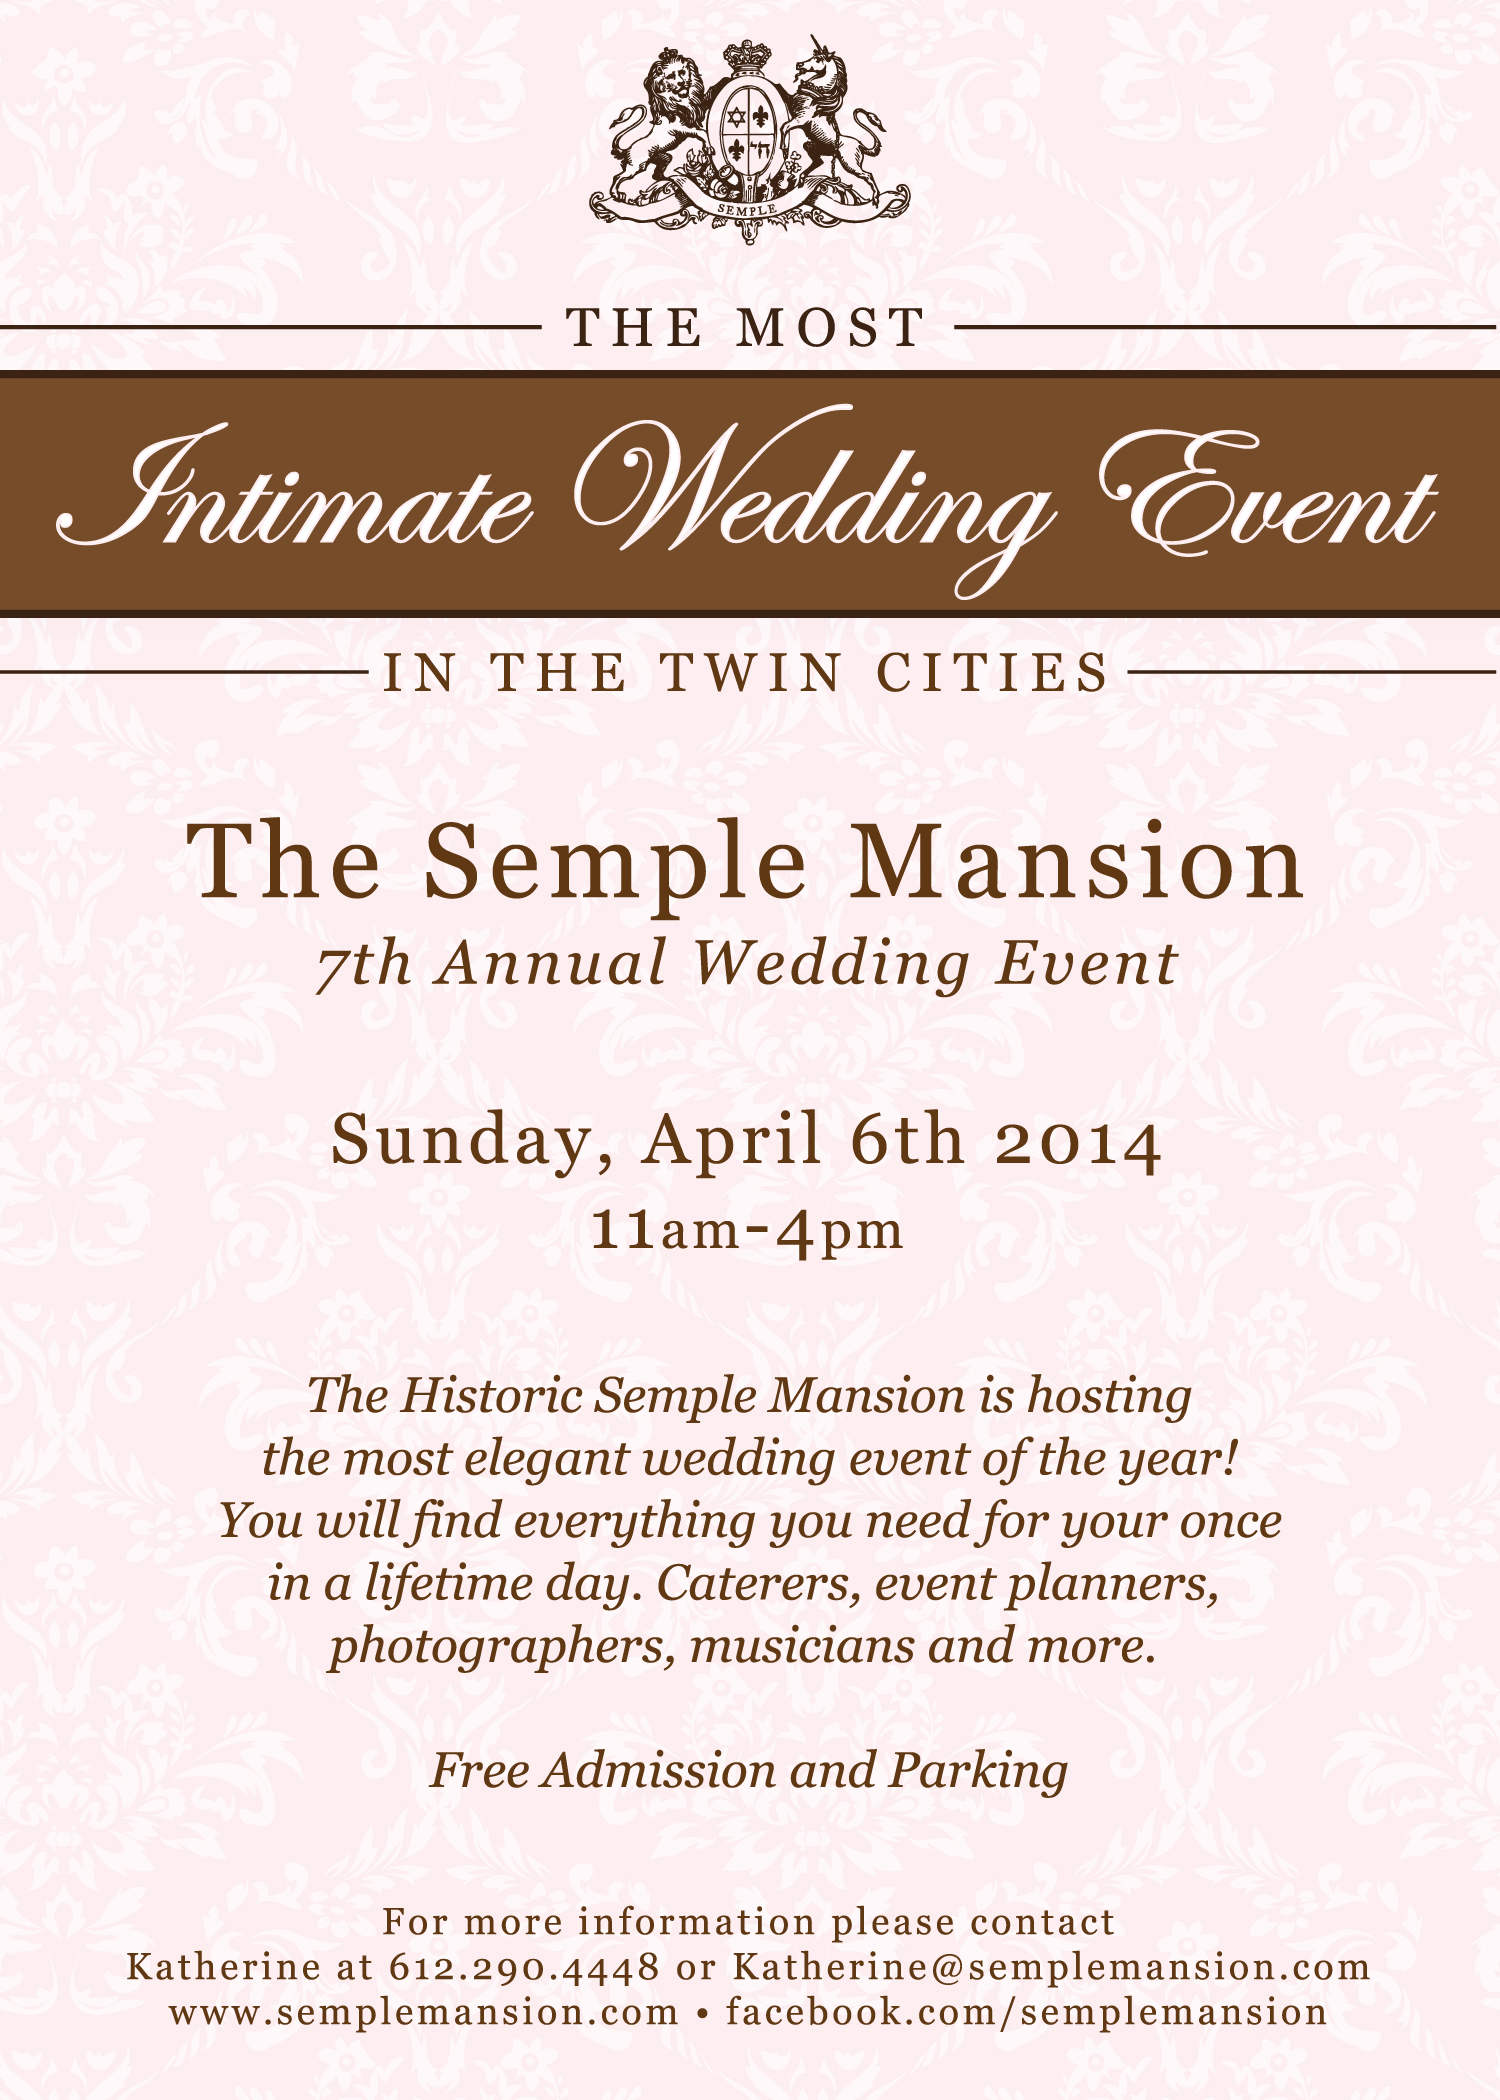 MN Wedding Fair, Semple Mansion Wedding Fair